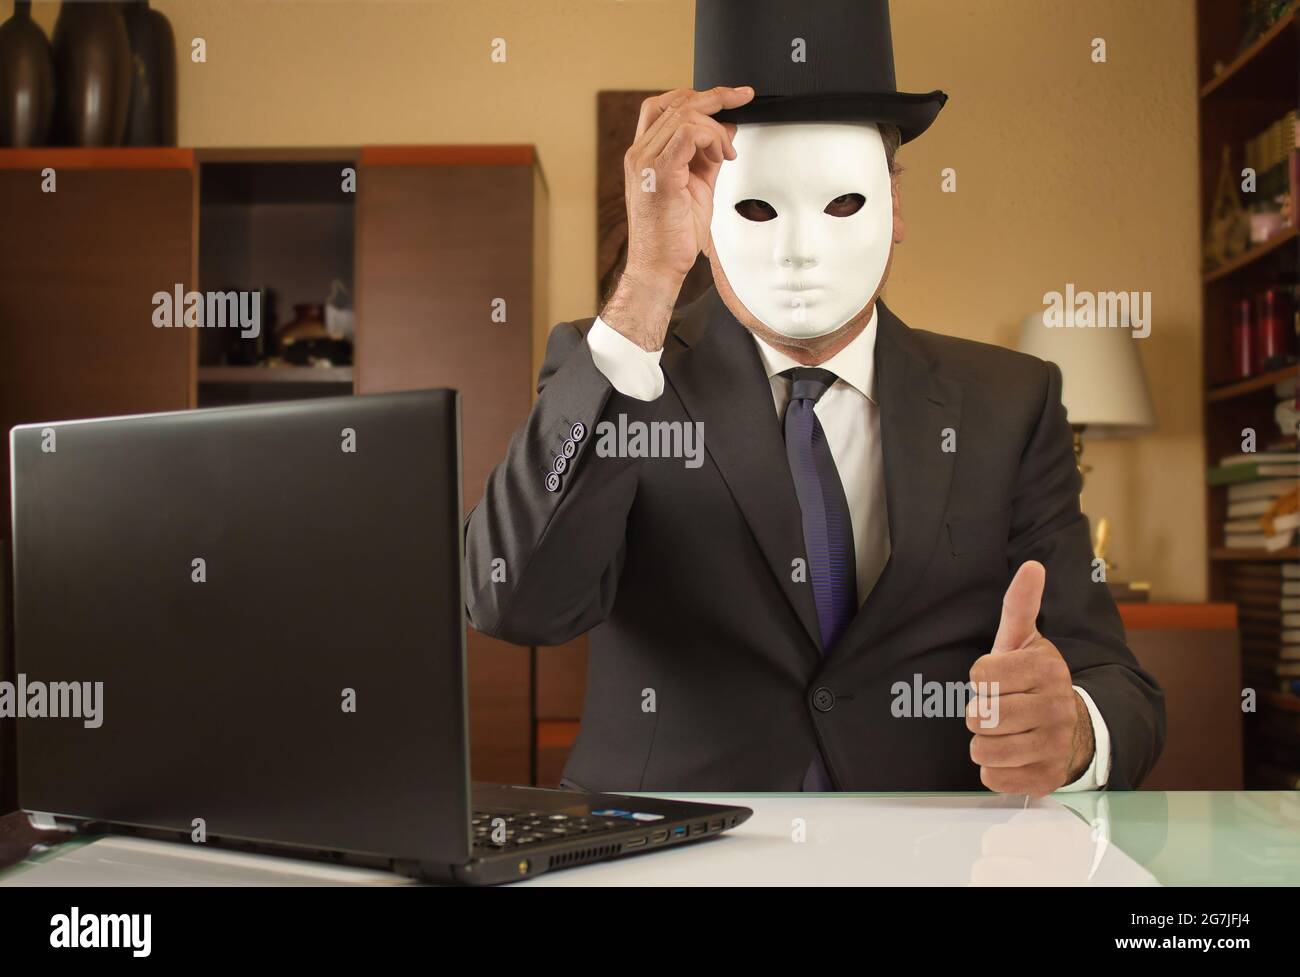 el empresario camuflado con una máscara y un sombrero saluda y teletrabajo desde casa debido a restricciones covid Foto de stock